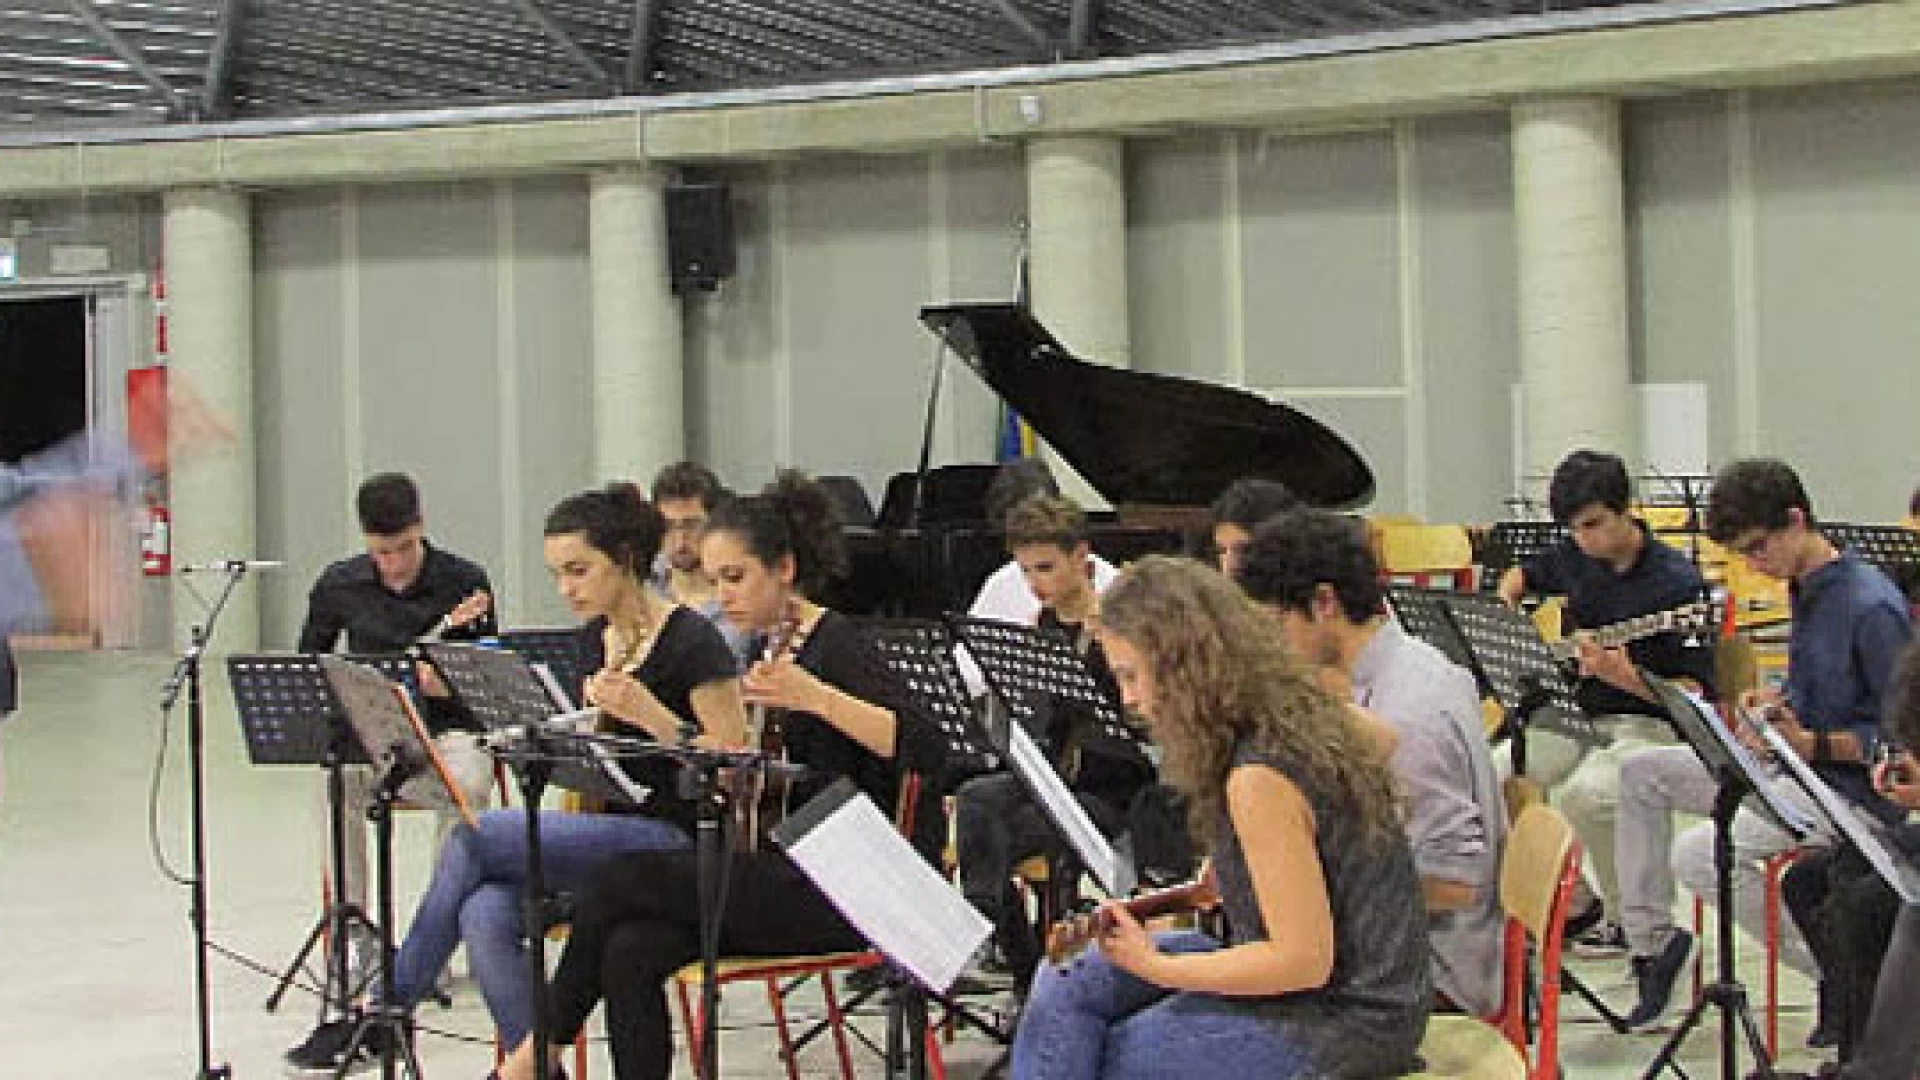 Concerto di fine anno dell’orchestra scolastica dell’Istituto Comprensivo di Colli a Volturno.